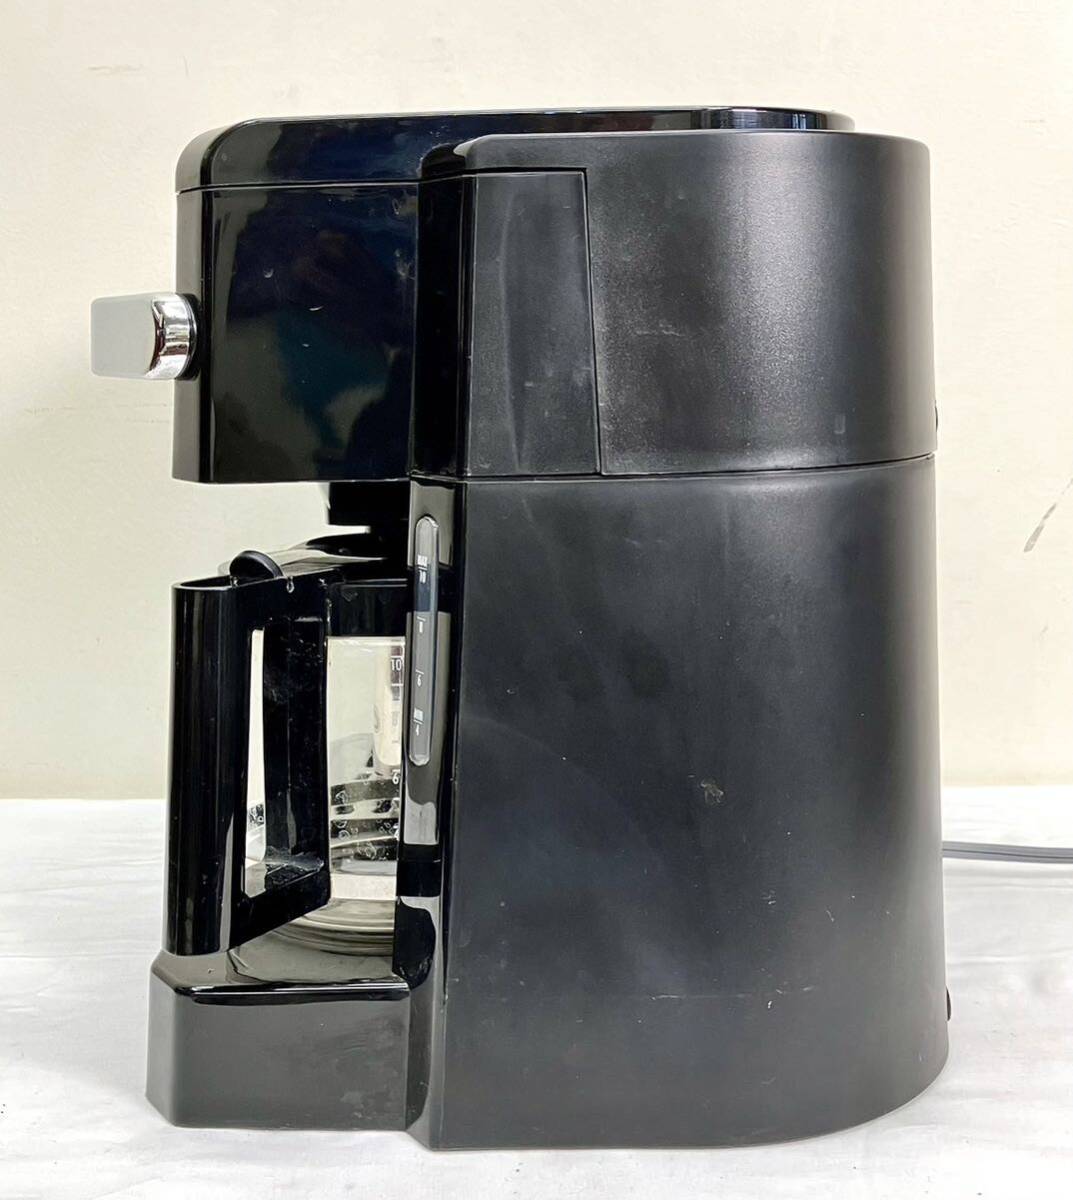 DeLonghite long gi комбинированный кофеварка BCO410J-B кофе механизм автомат эспрессо карниз тип кухонная утварь электризация проверка BC0410J-B суммировать 